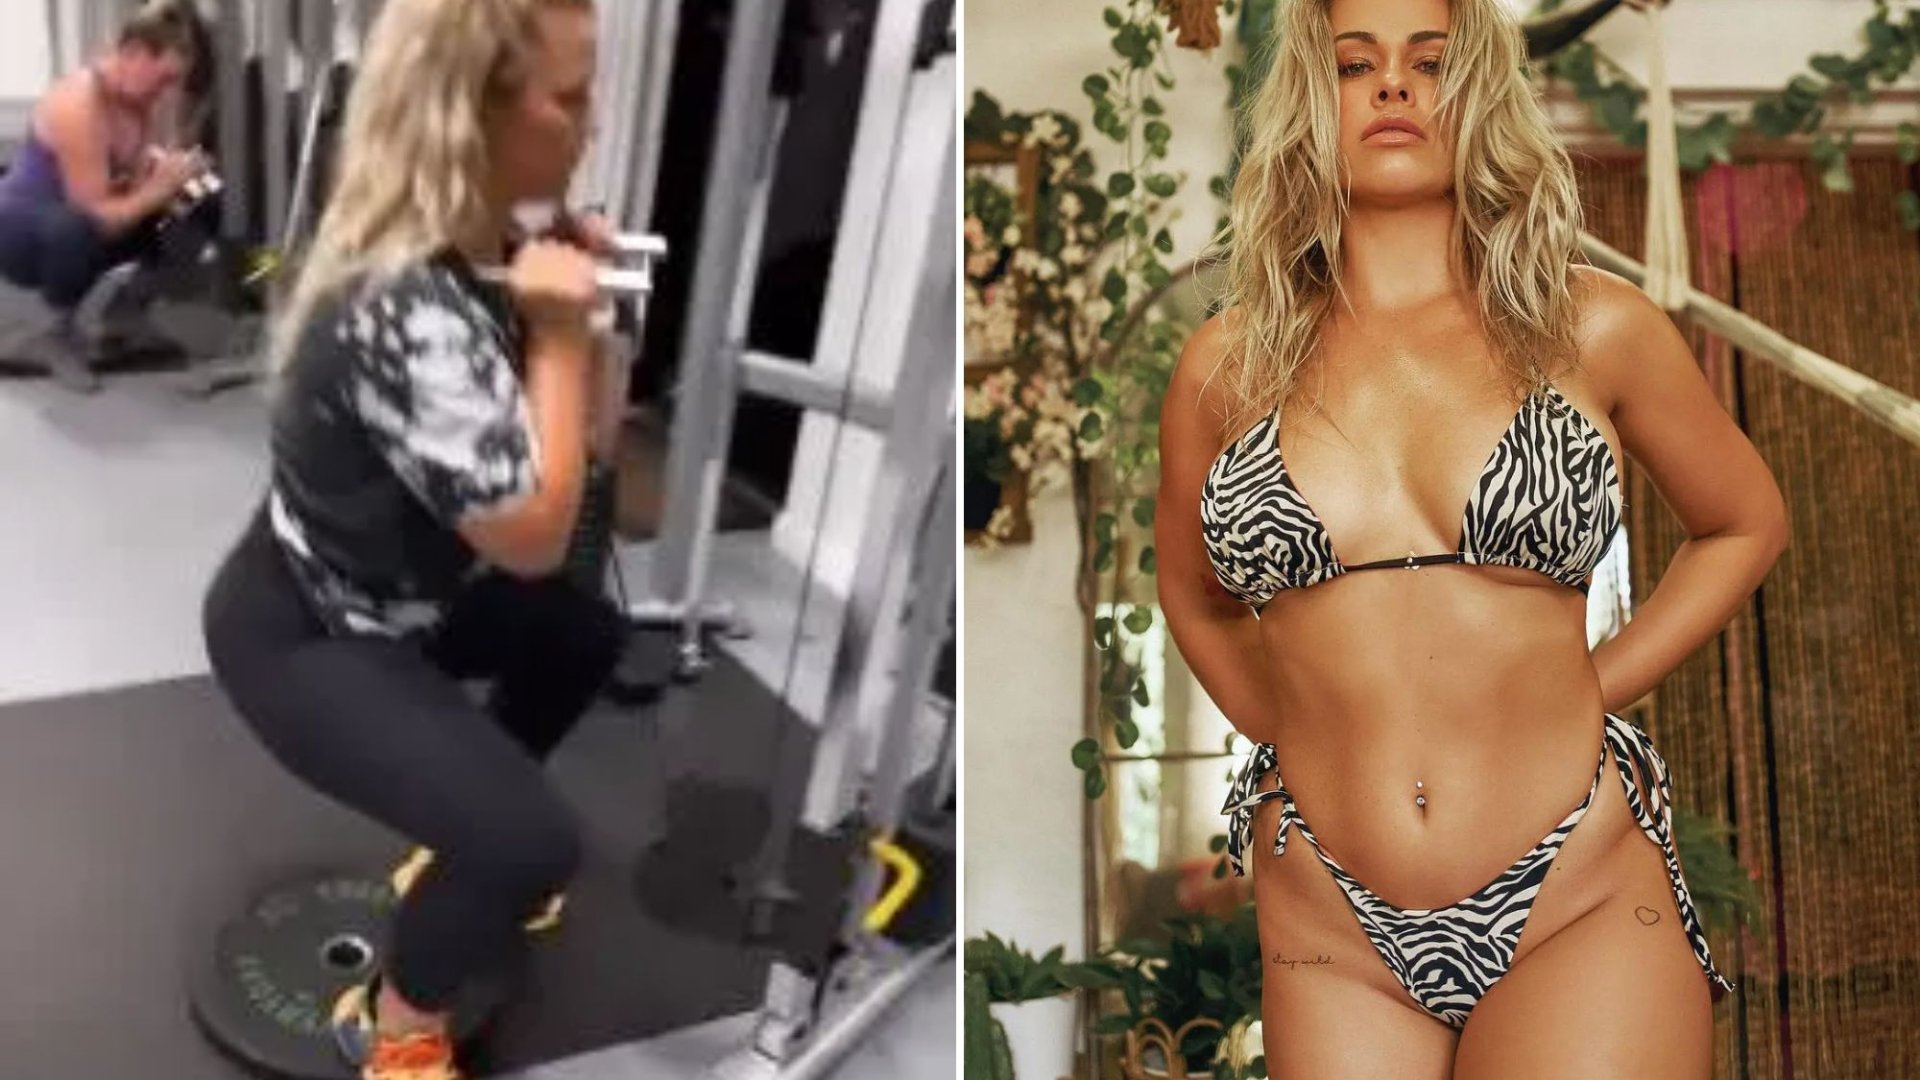 Mira el video de entrenamiento de Paige VanZant mientras la impresionante ex estrella de UFC llega al gimnasio después de posar en un bikini de tigre.